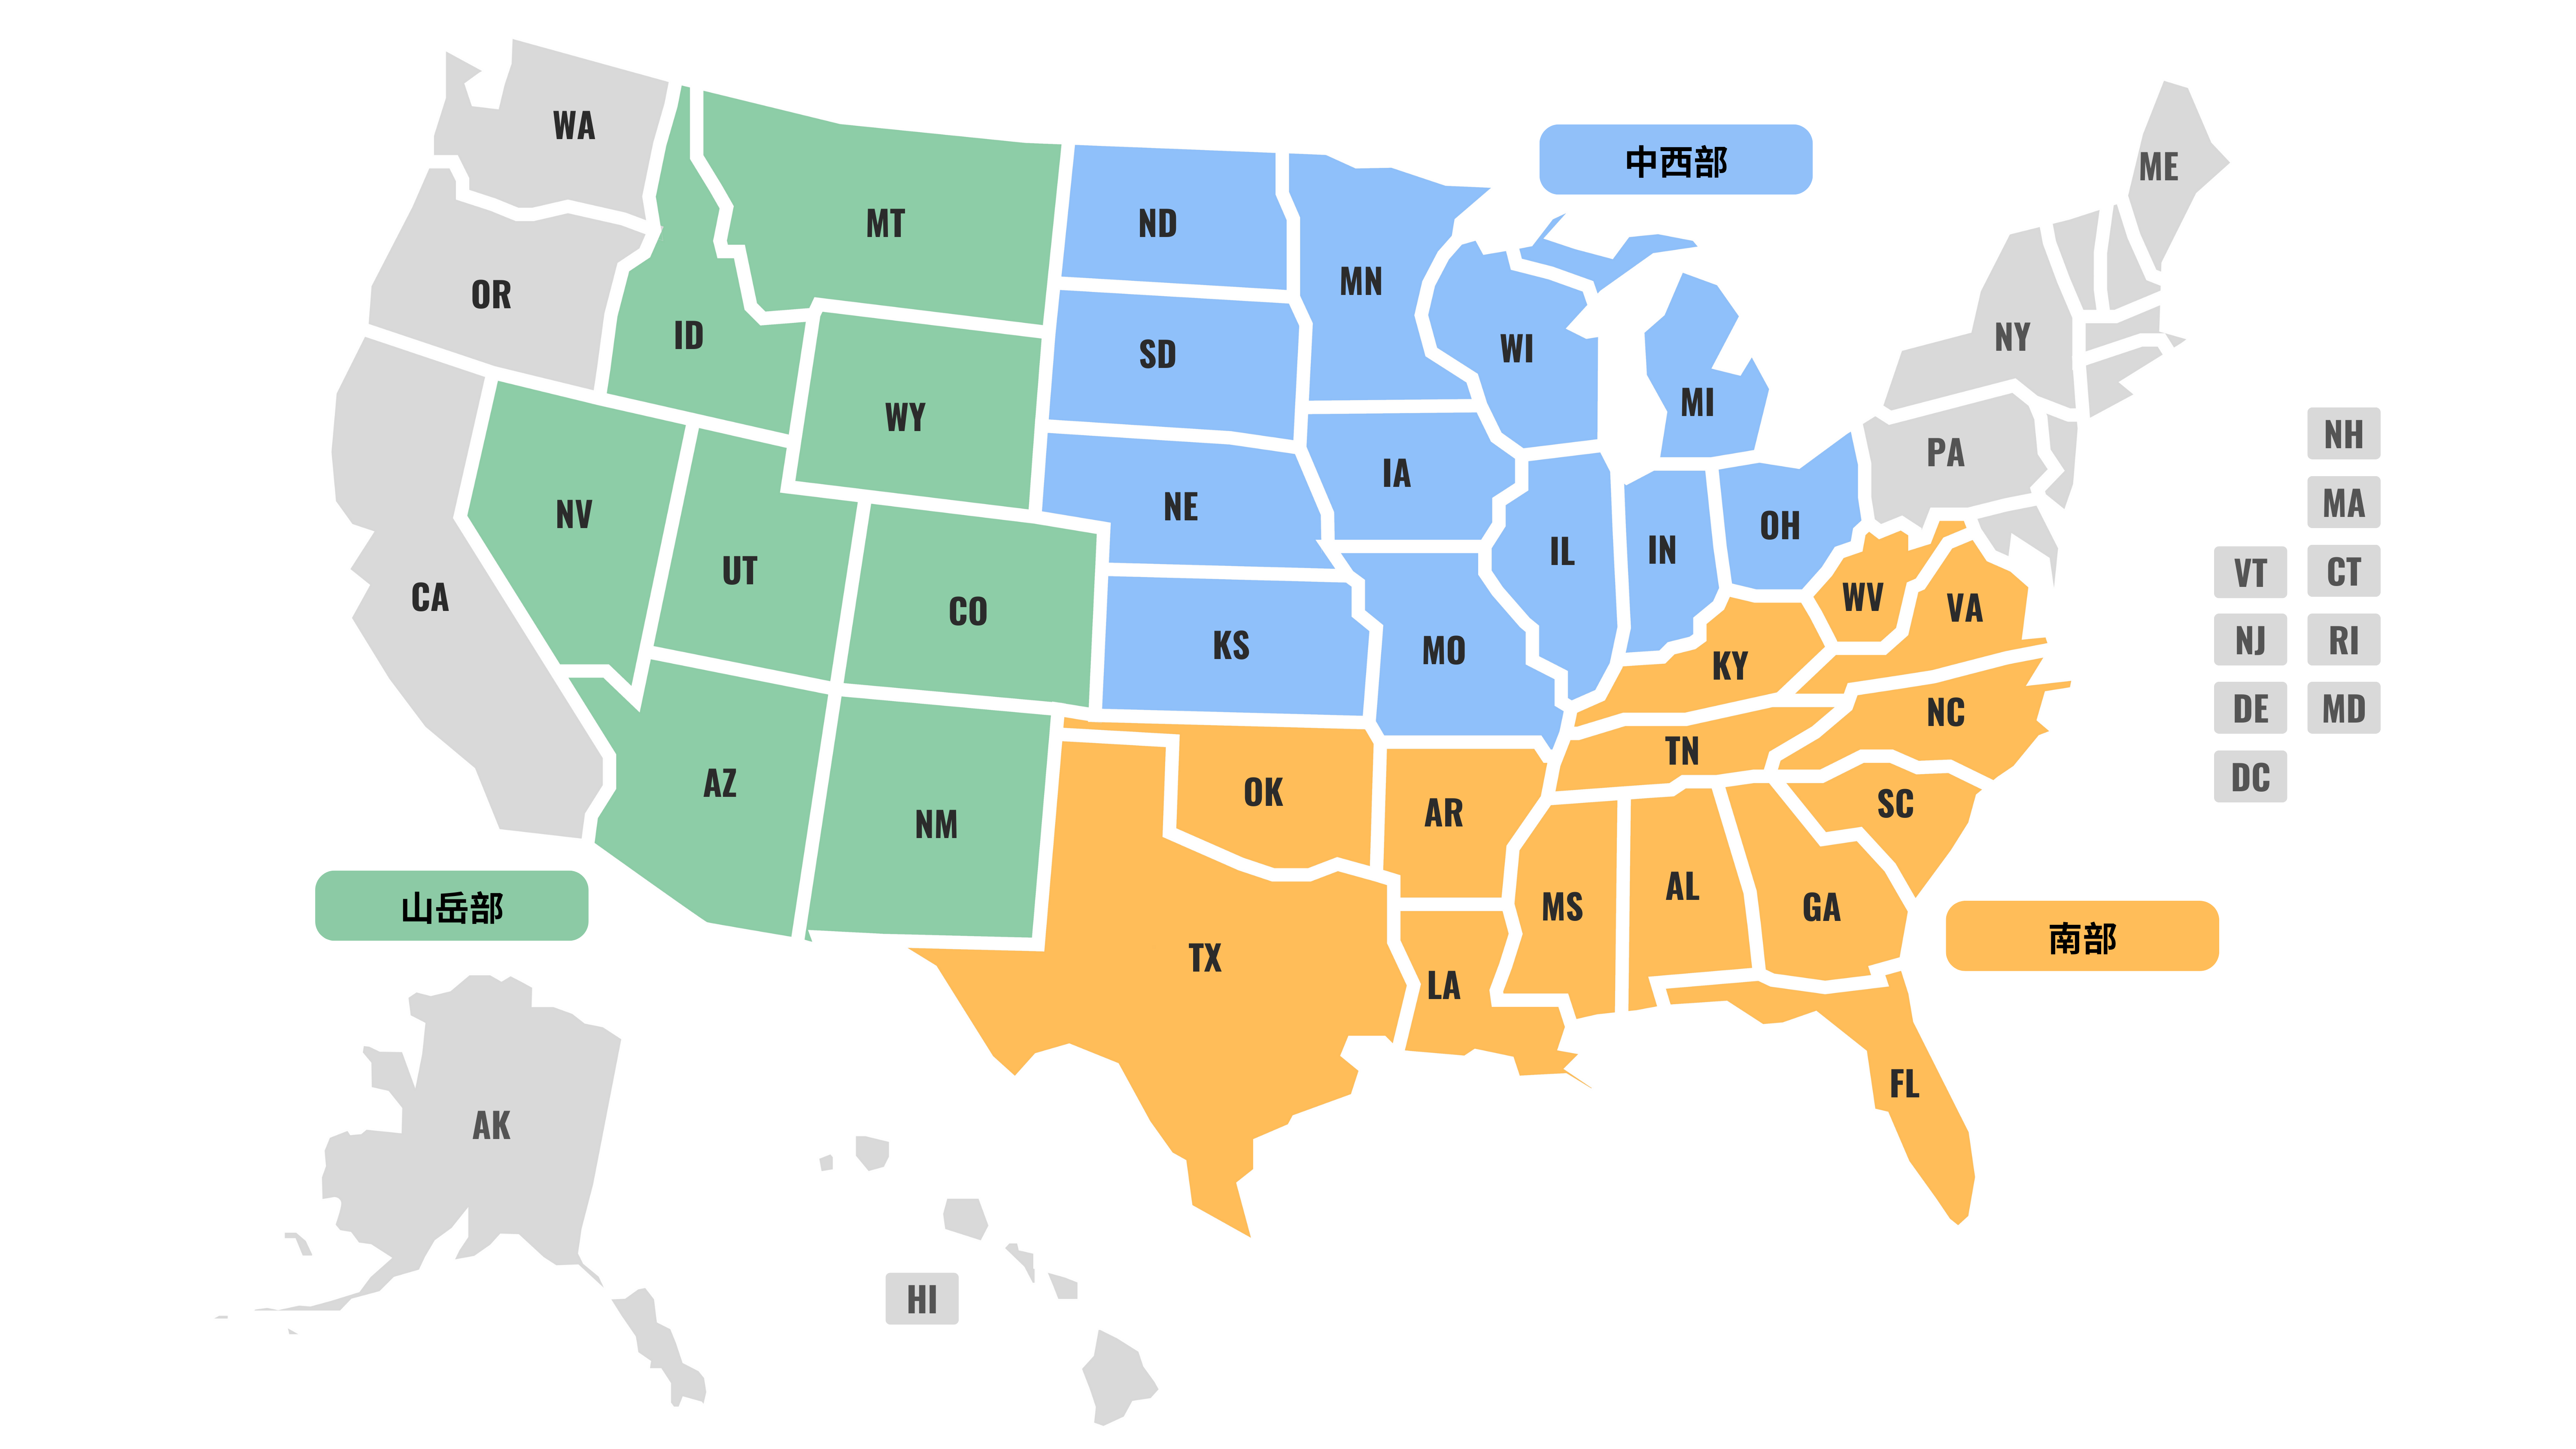 米国地図及び、JOIプログラム派遣対象地域